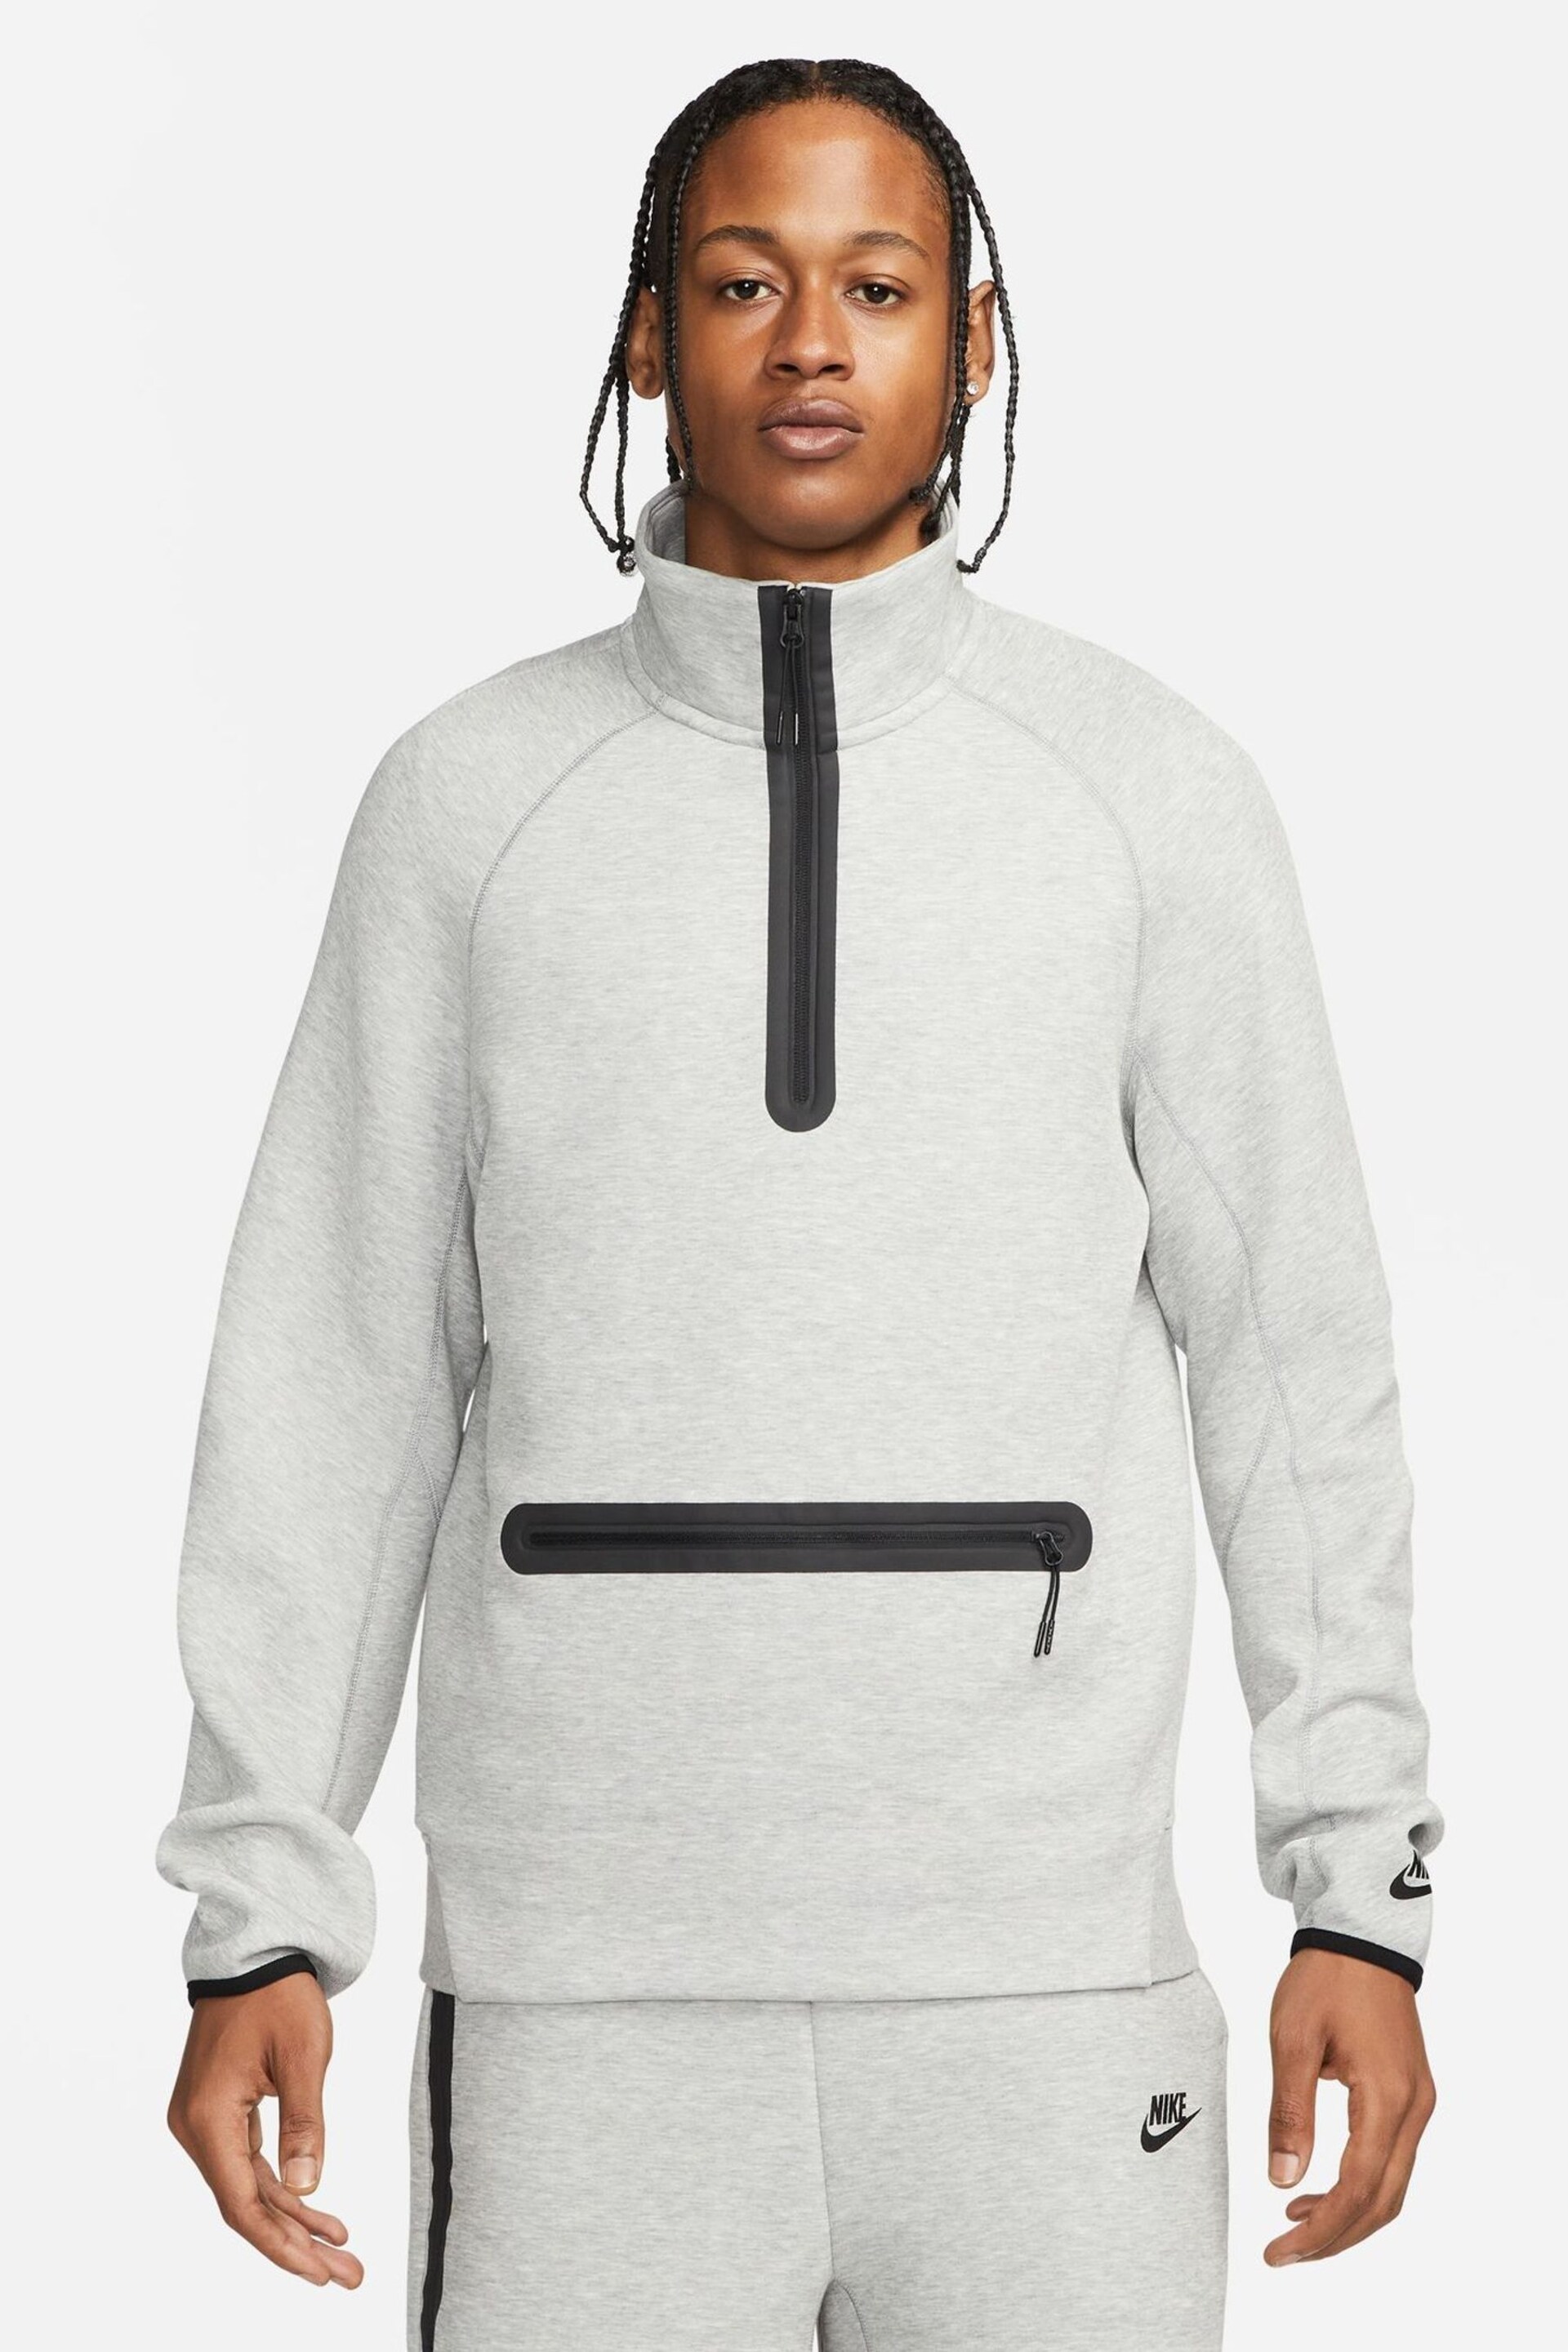 Nike Grey Tech Fleece Half Zip Sweatshirt - Image 1 of 16